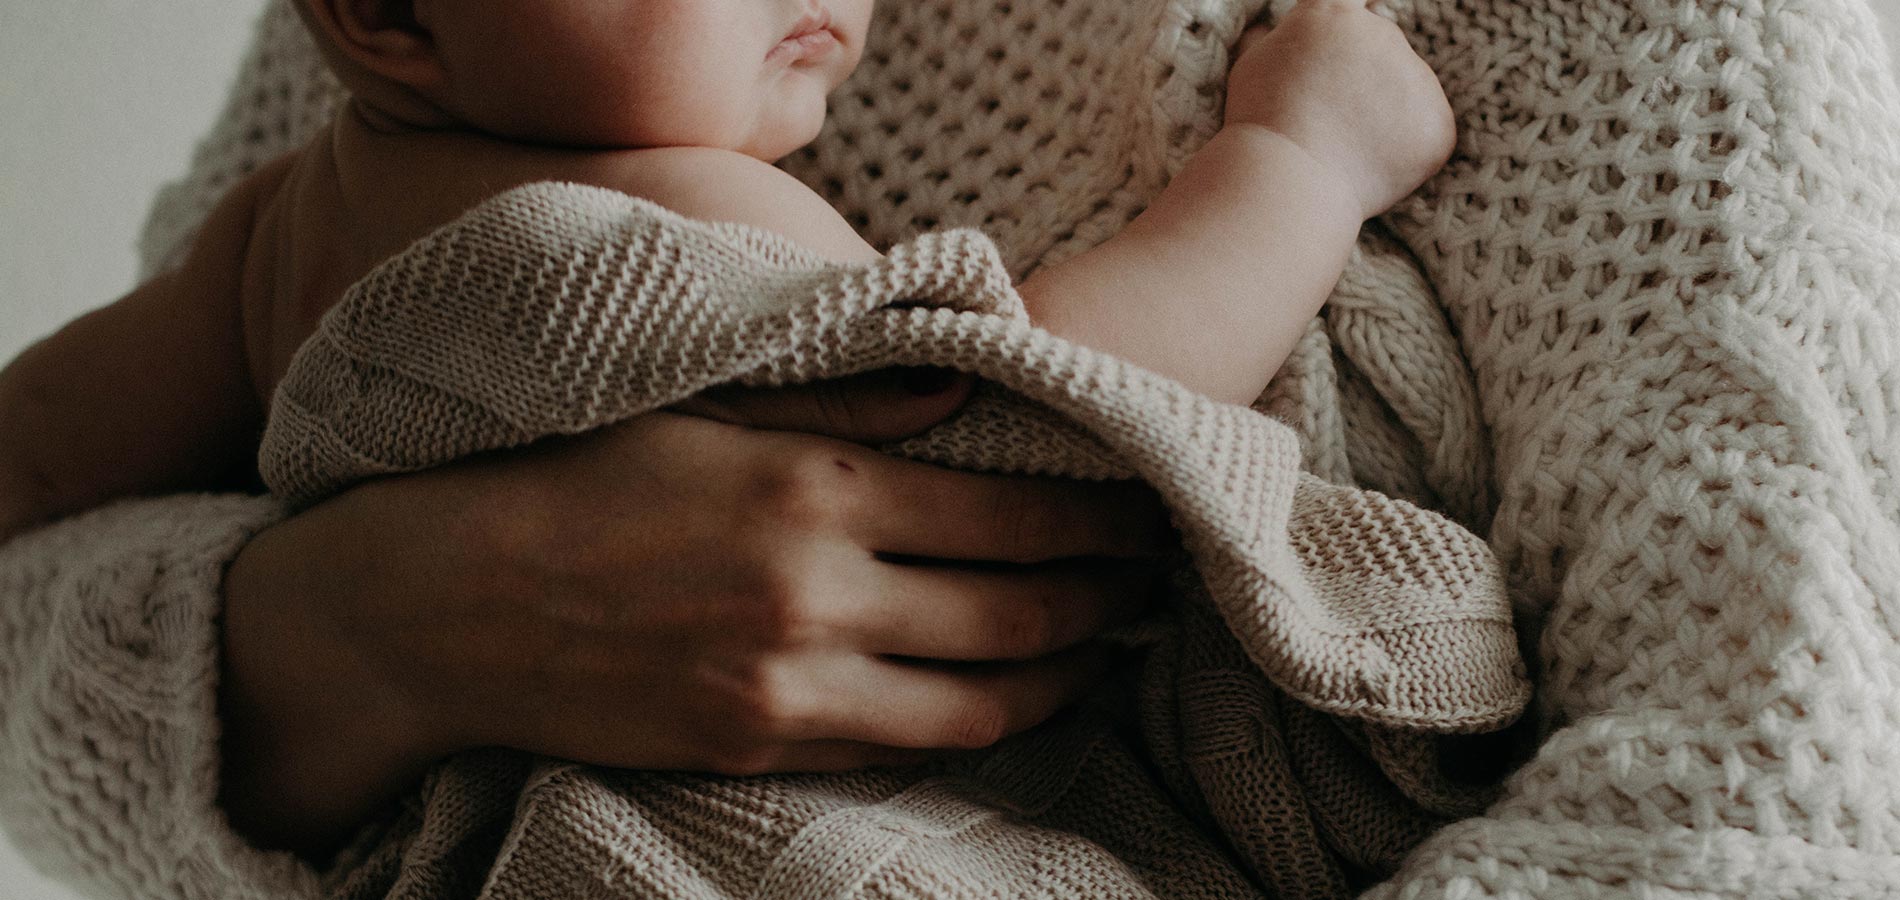 Changer les couches des nouveaux-nés : Soins du cordon ombilical